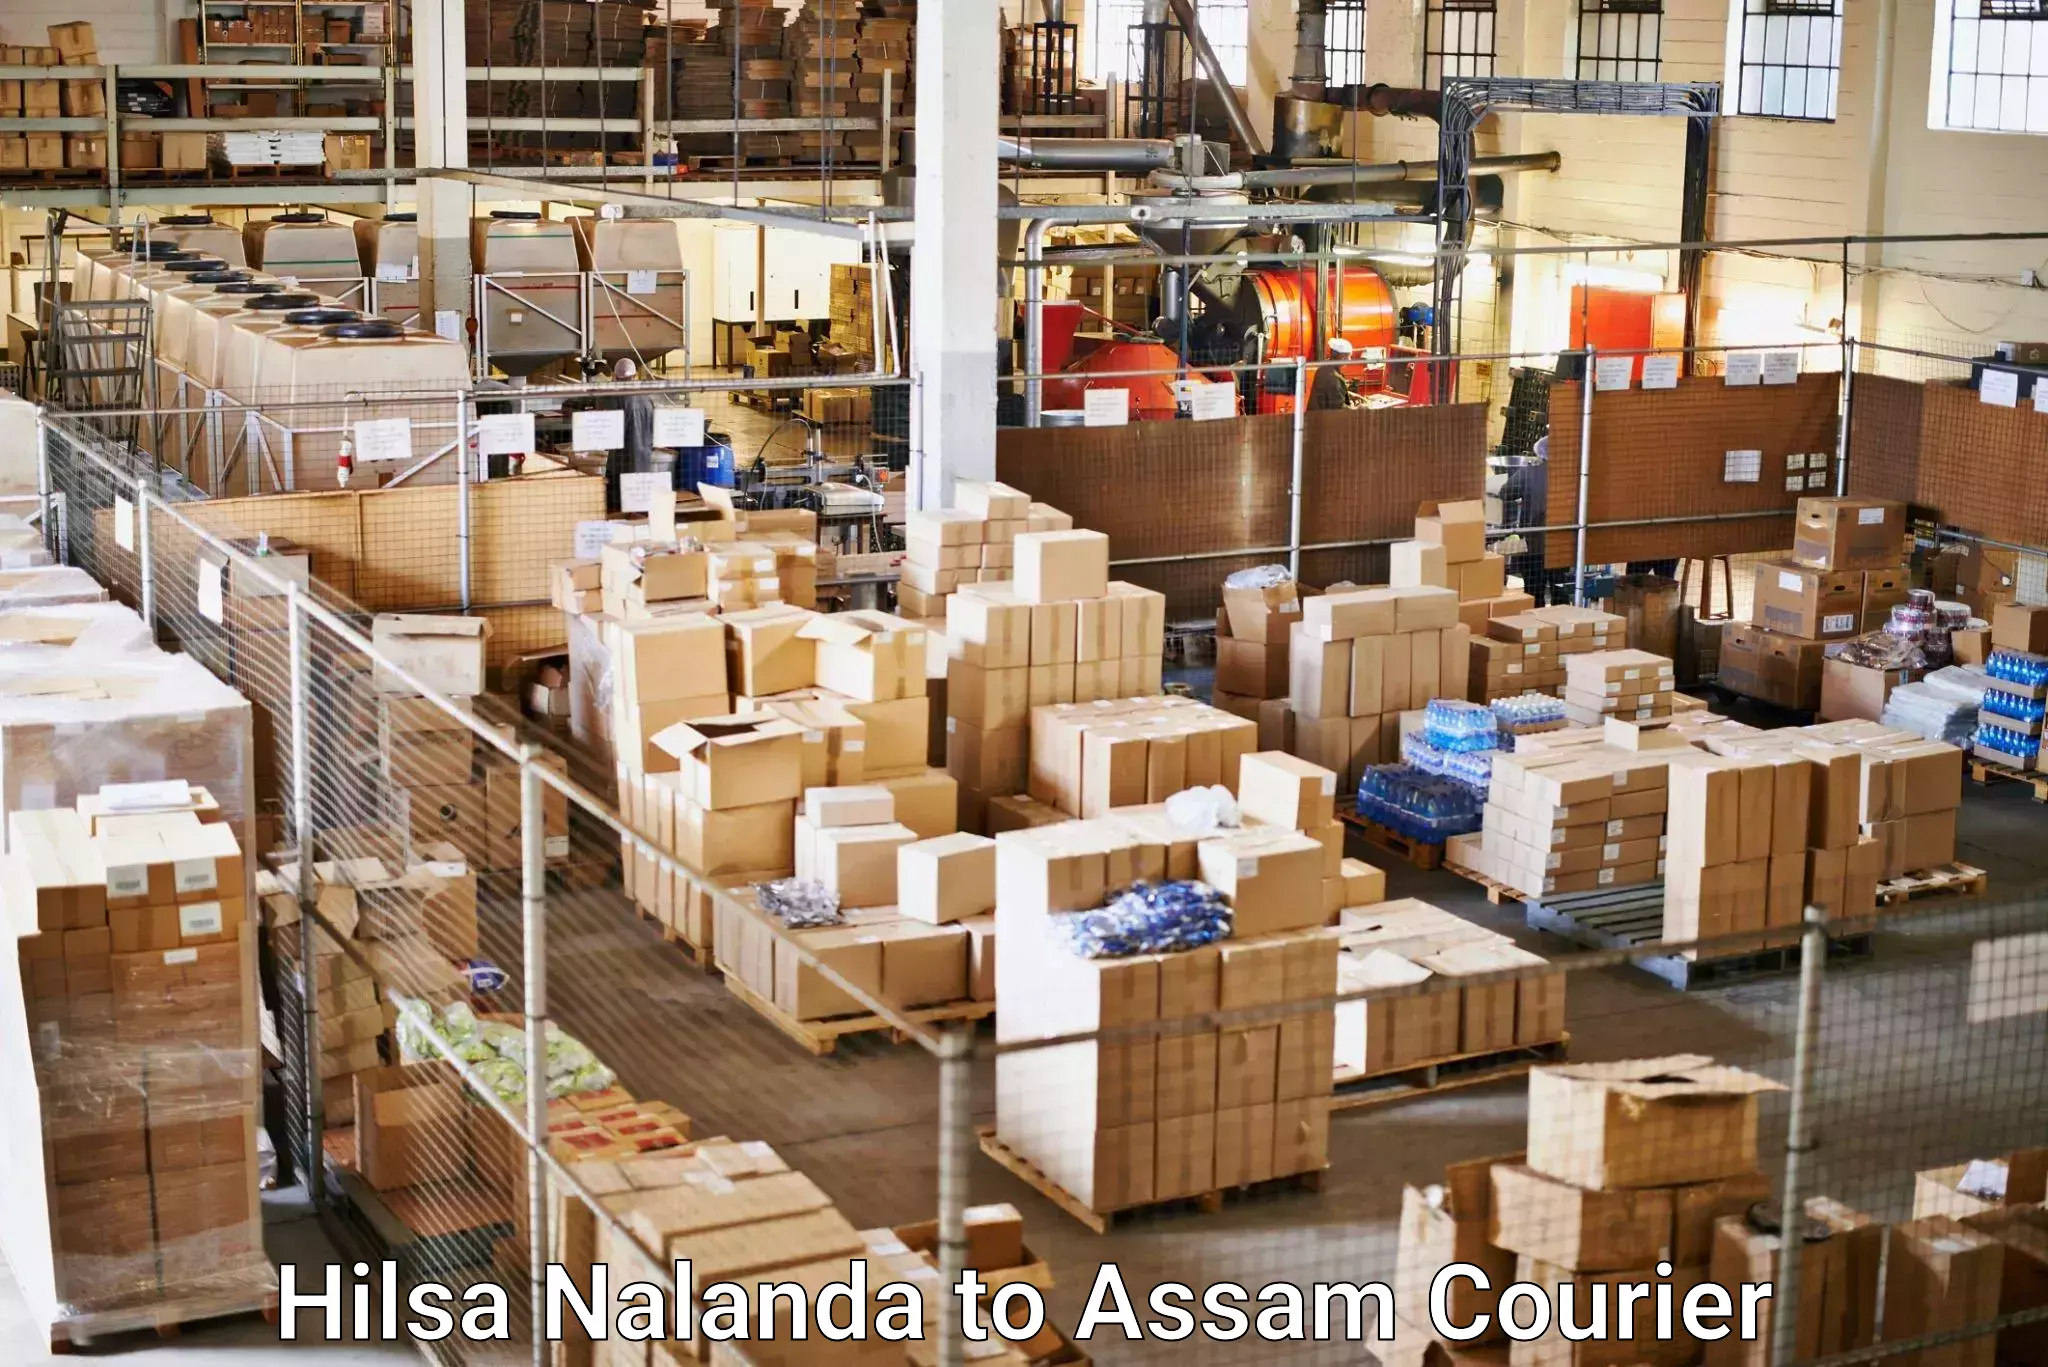 24-hour courier services Hilsa Nalanda to Assam